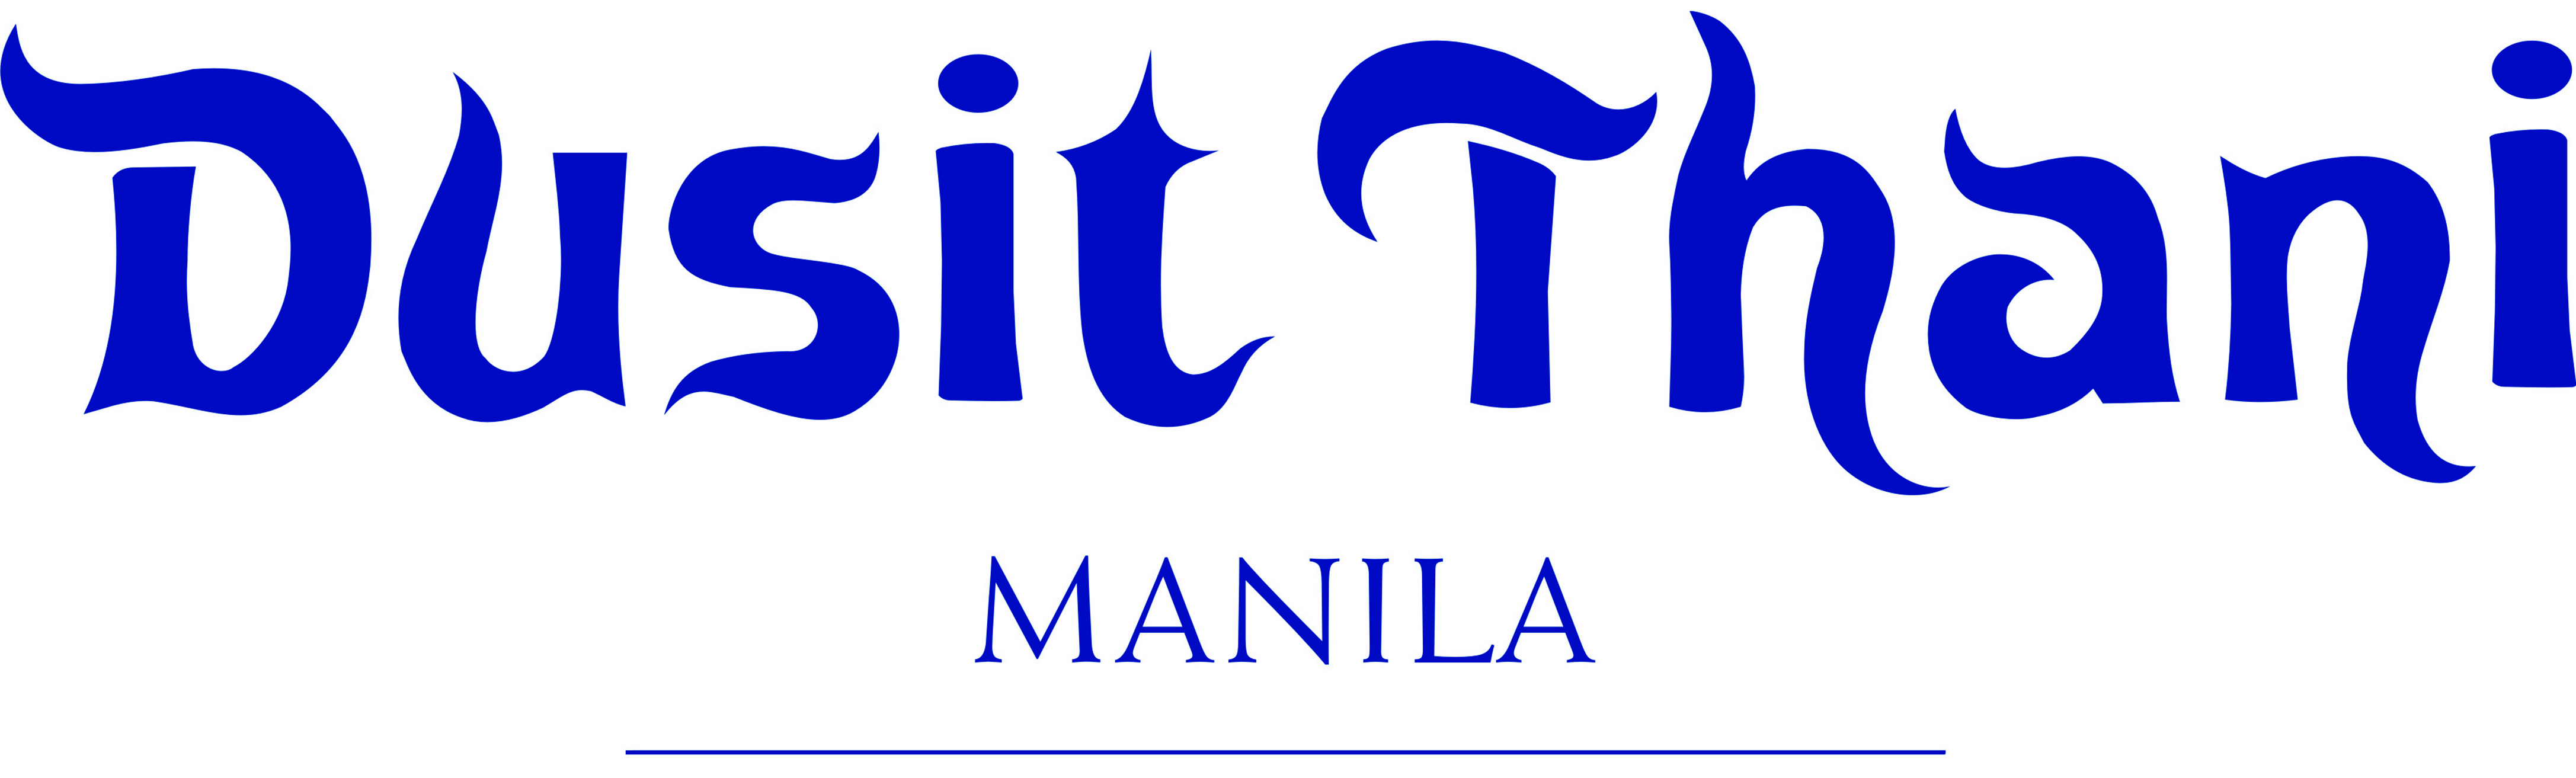 Le Cordon Bleu Partner Dusit Thani Manila Hotel